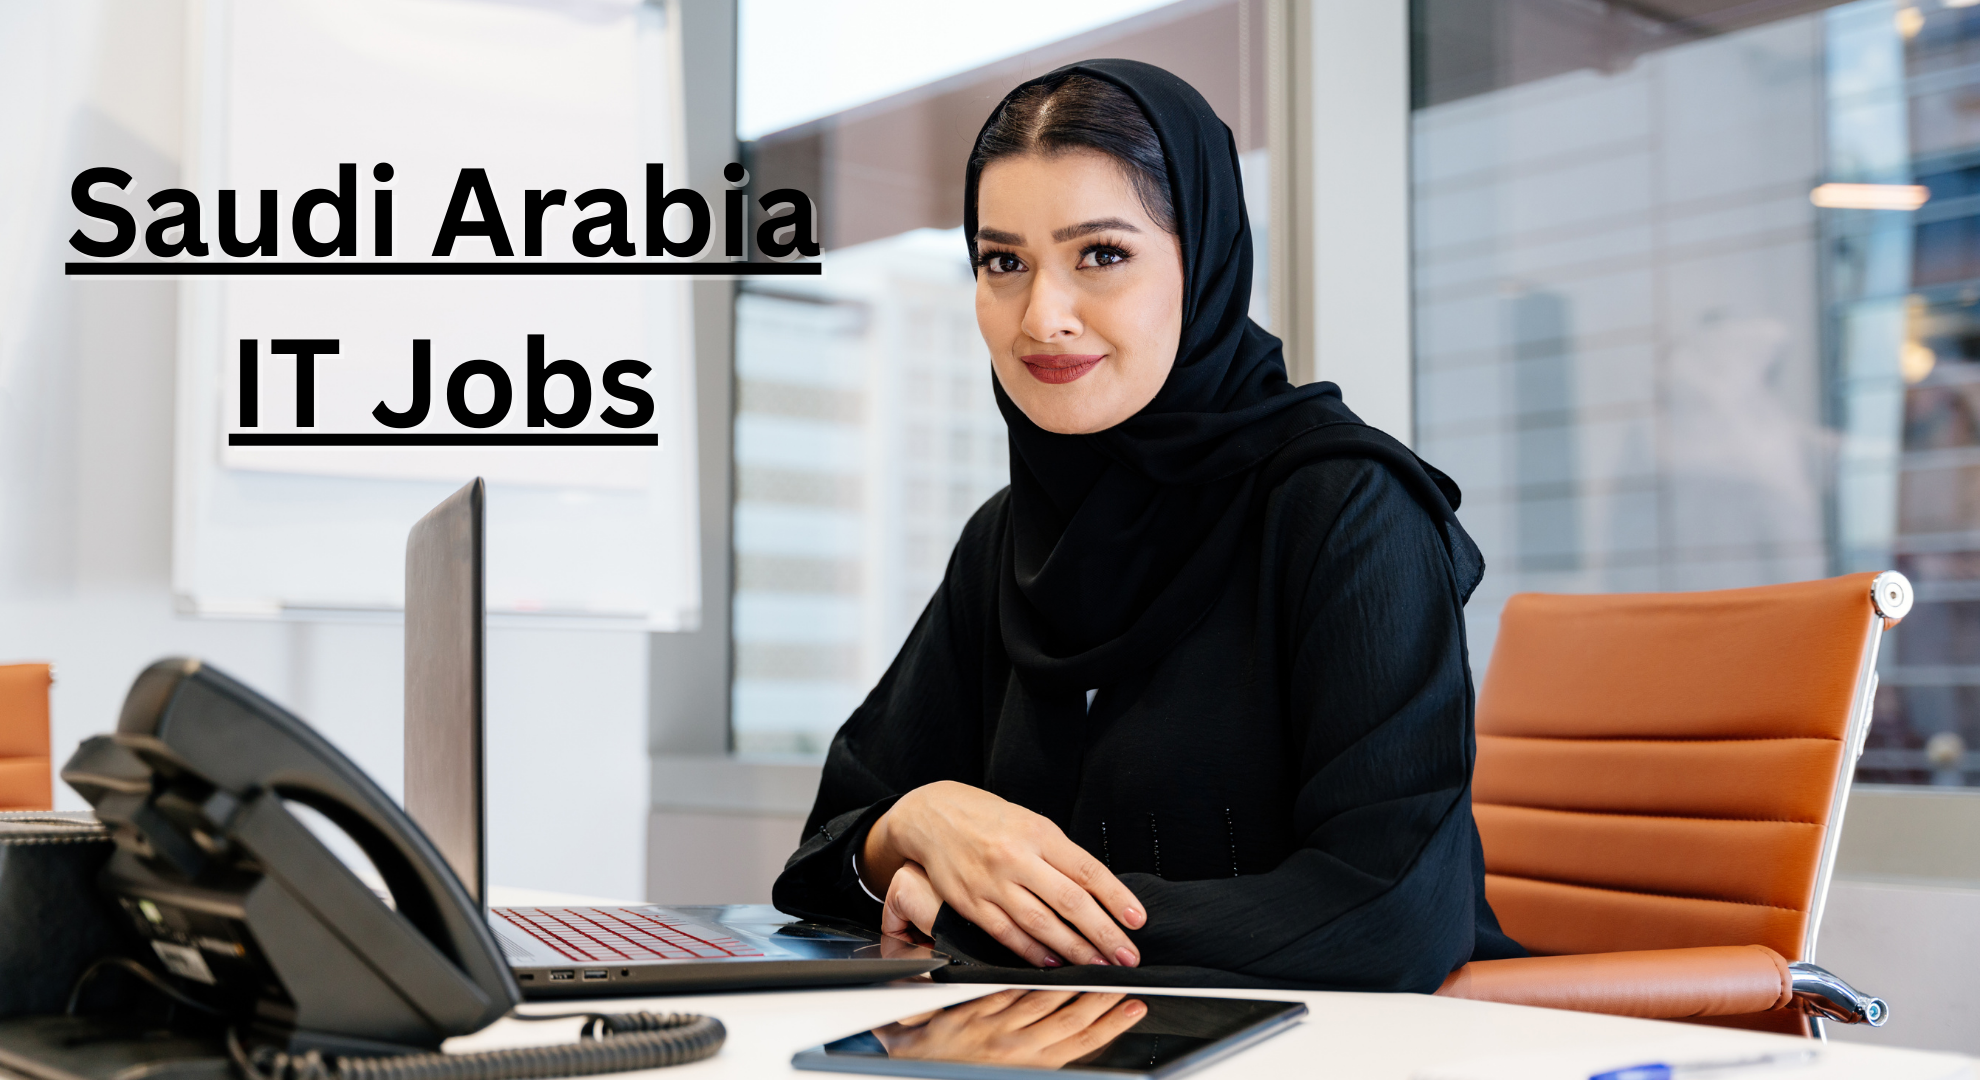 Saudi Arabia IT Jobs